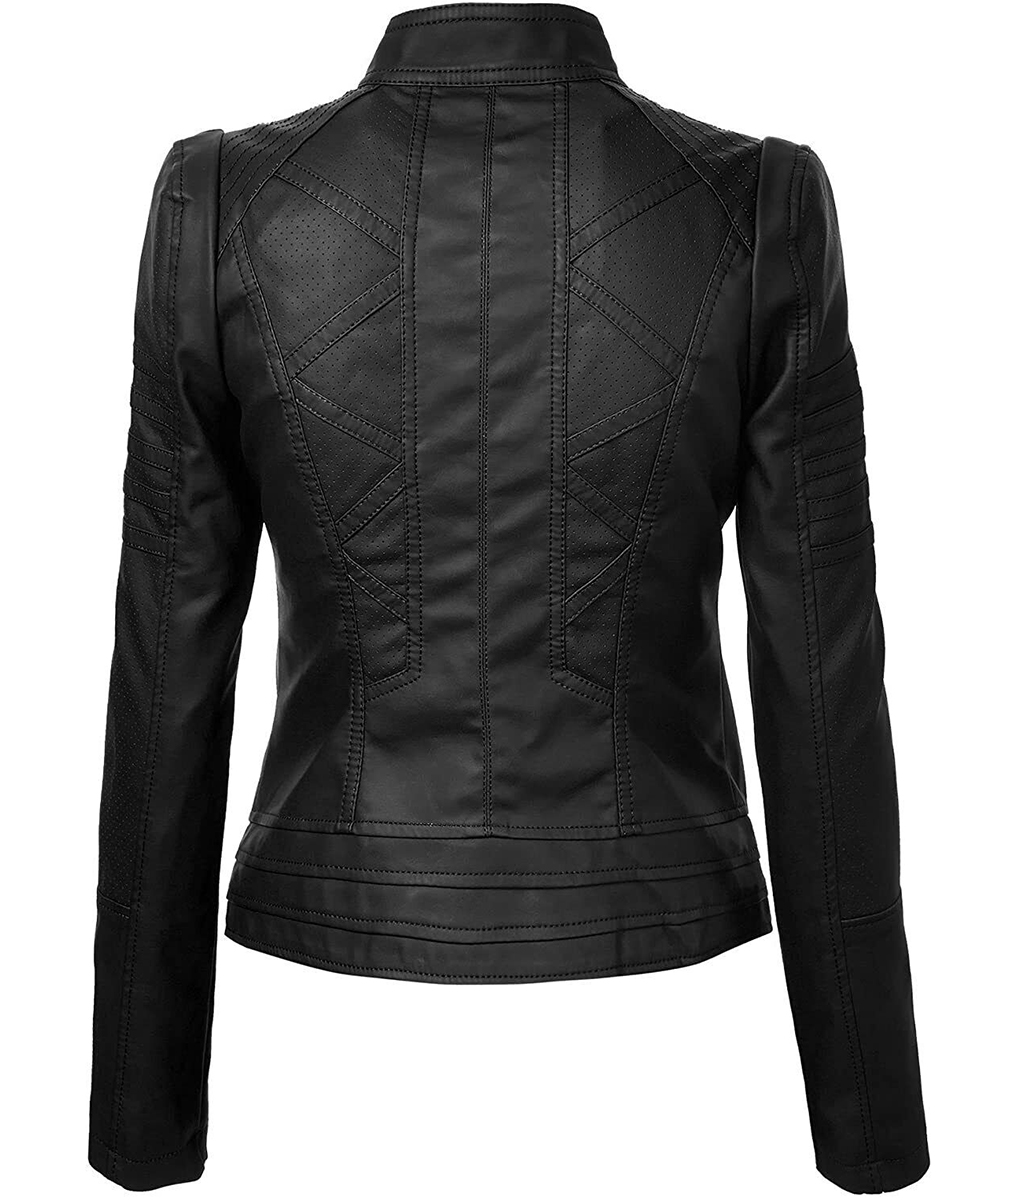 Alison Parker Black Leather Jacket